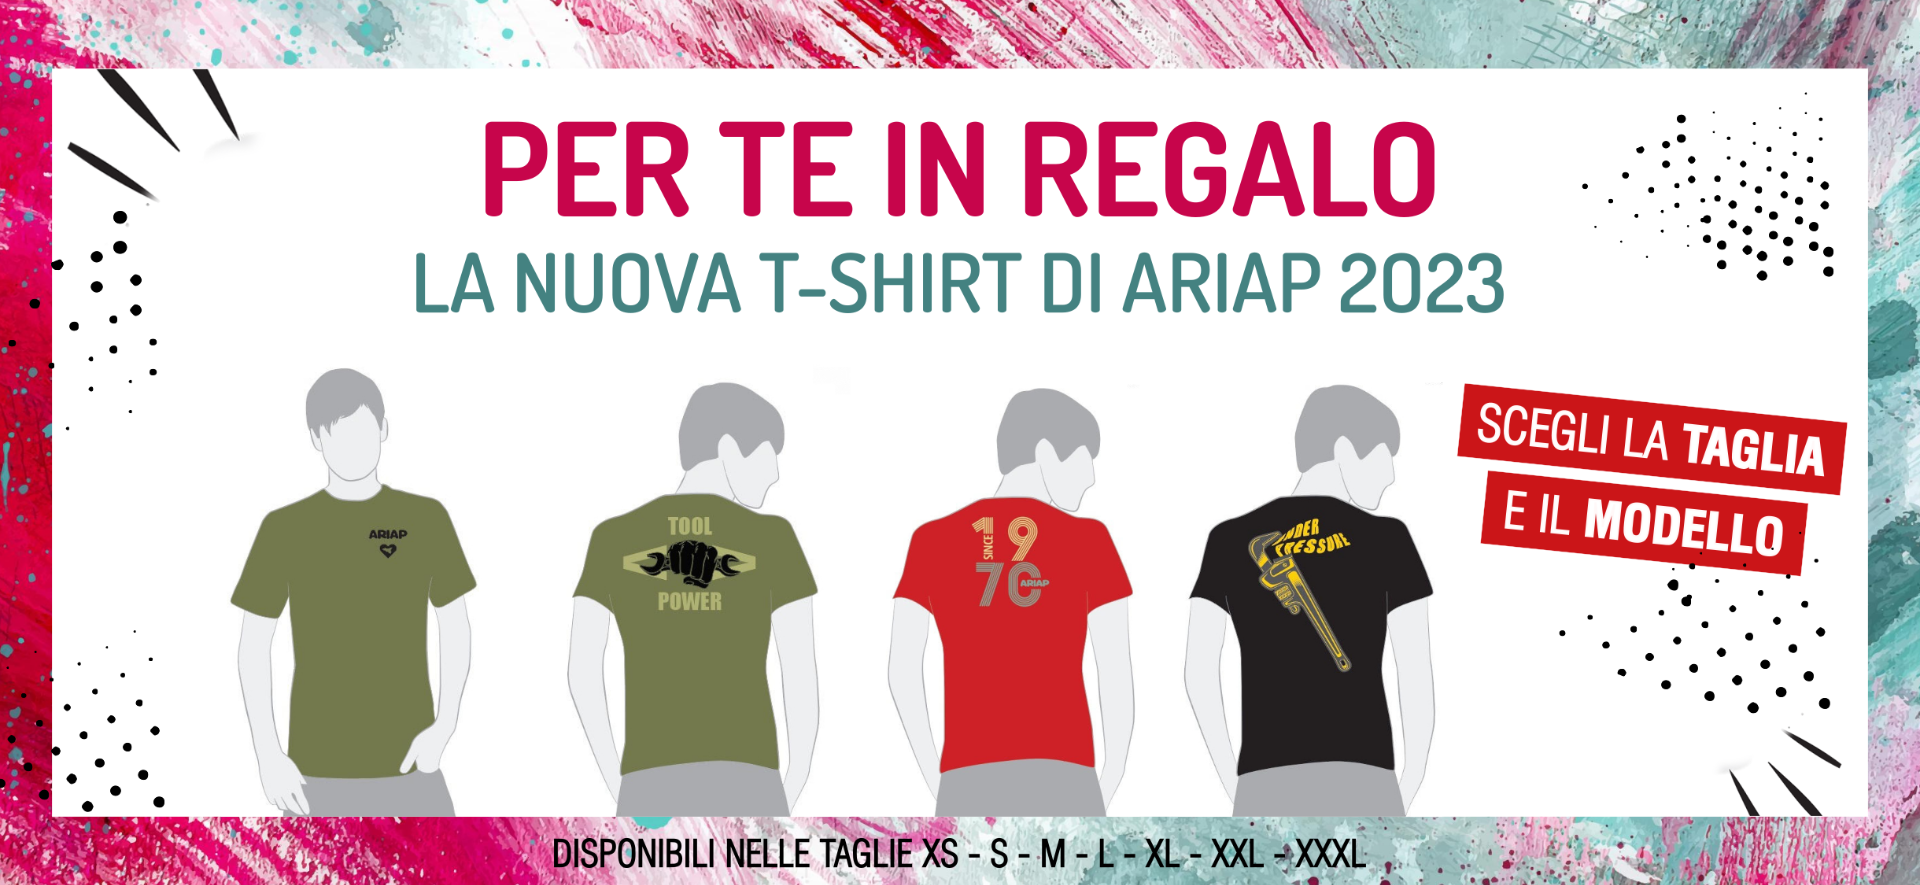 Promo magliette 2023 - Ariap ricambi trucks sicilia